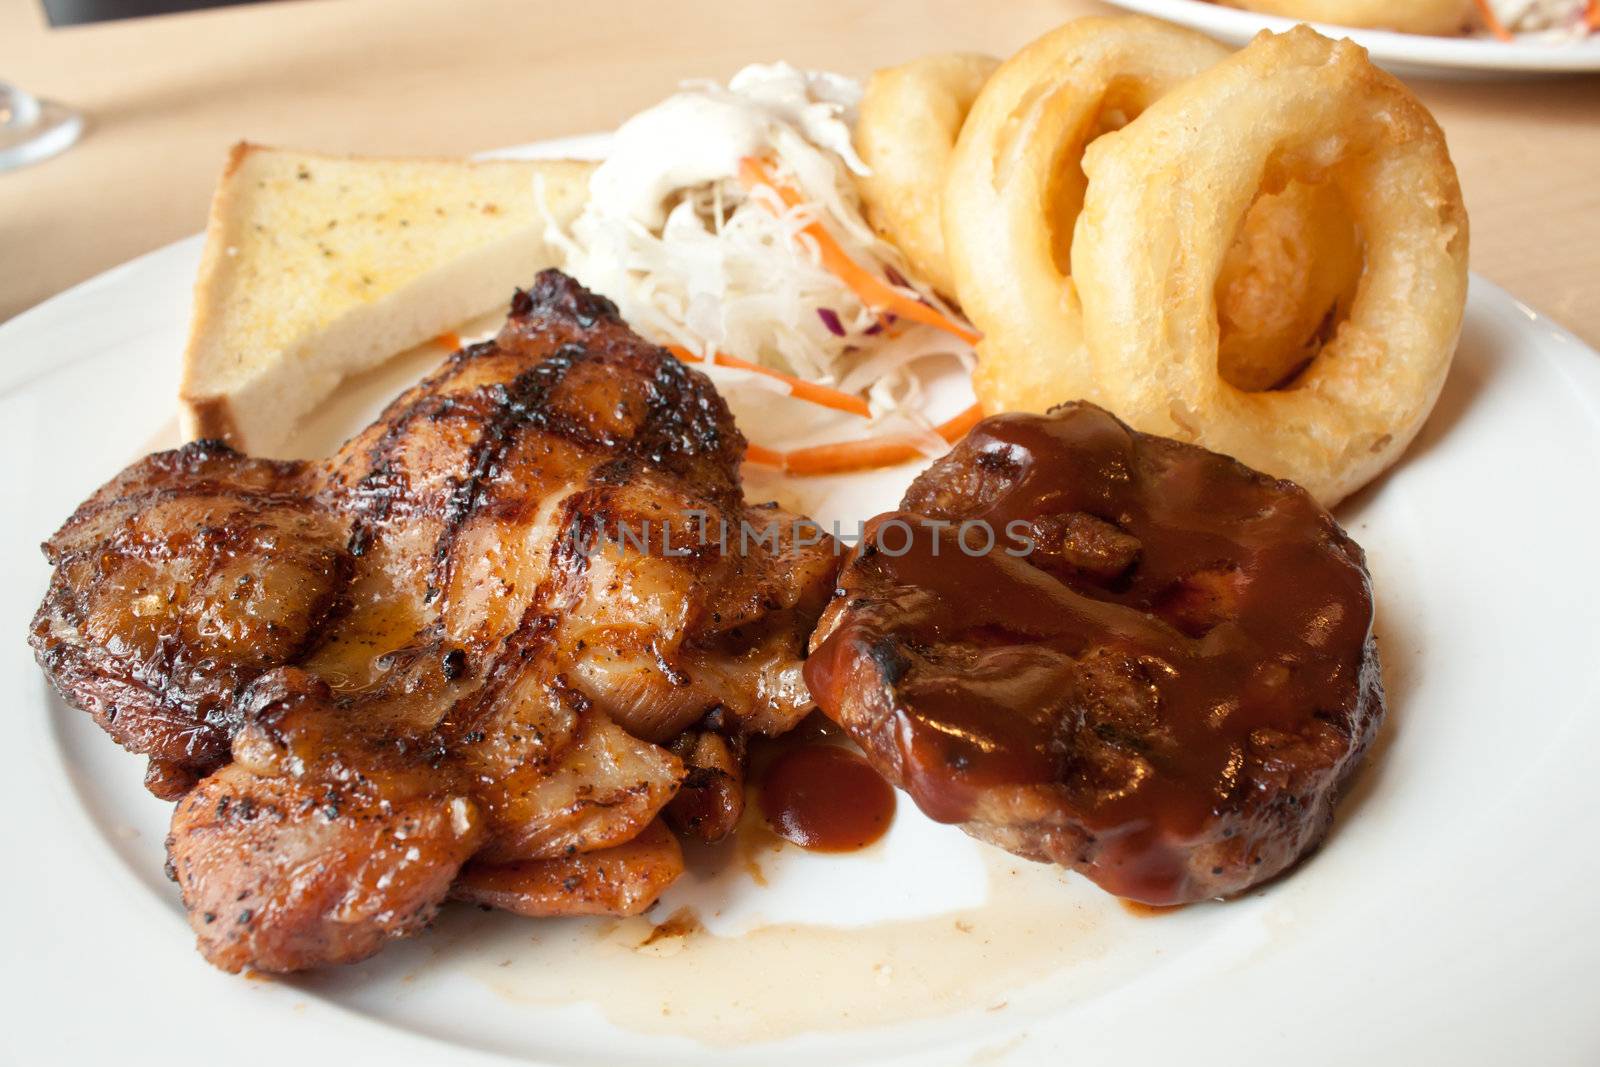 Chicken and pork steak by artemisphoto